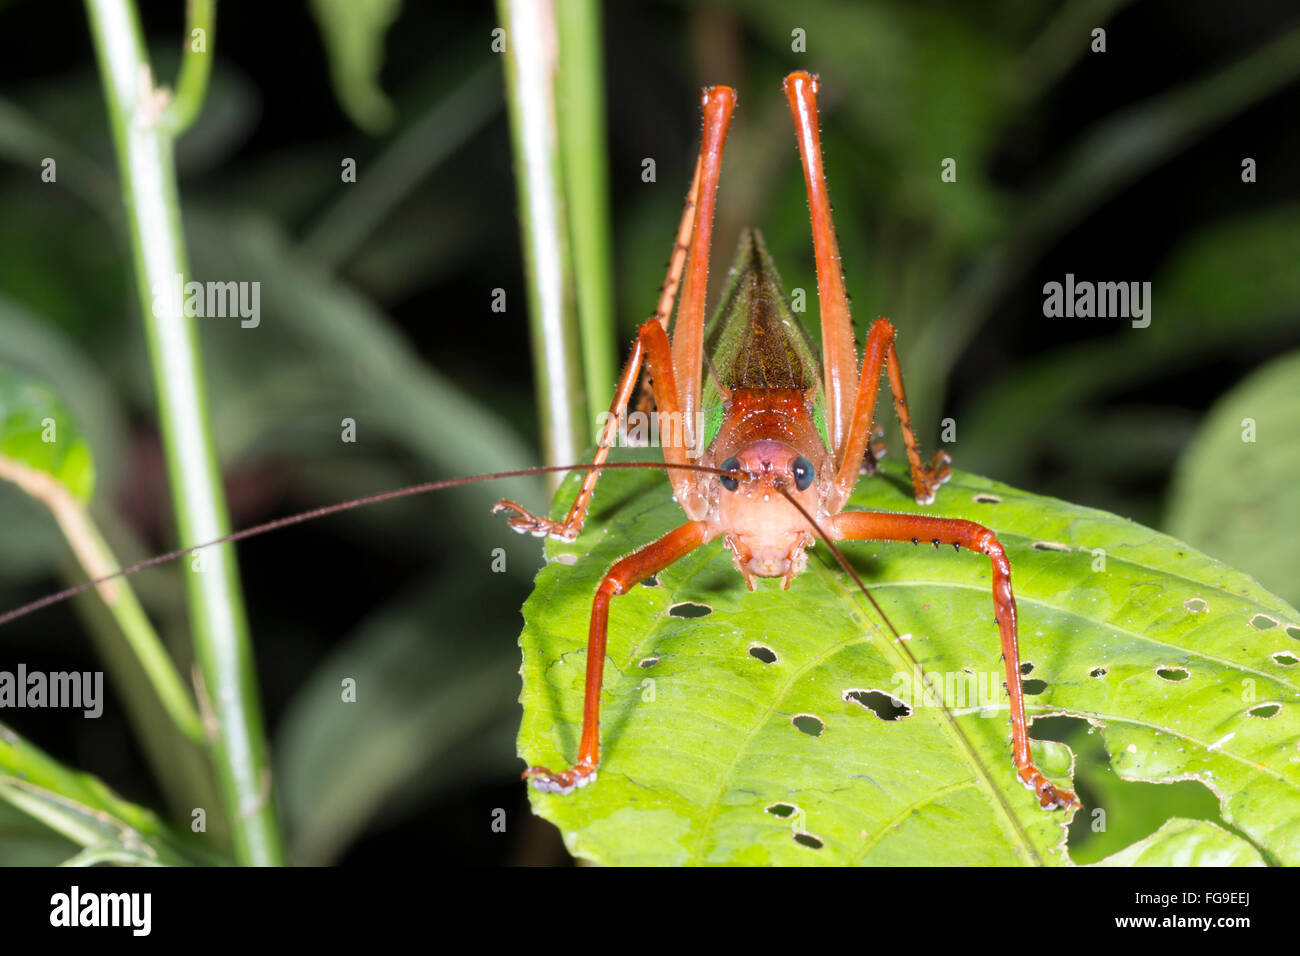 Green bush cricket dans une forêt d'arbustes, province de Pastaza en Amazonie équatorienne. Banque D'Images